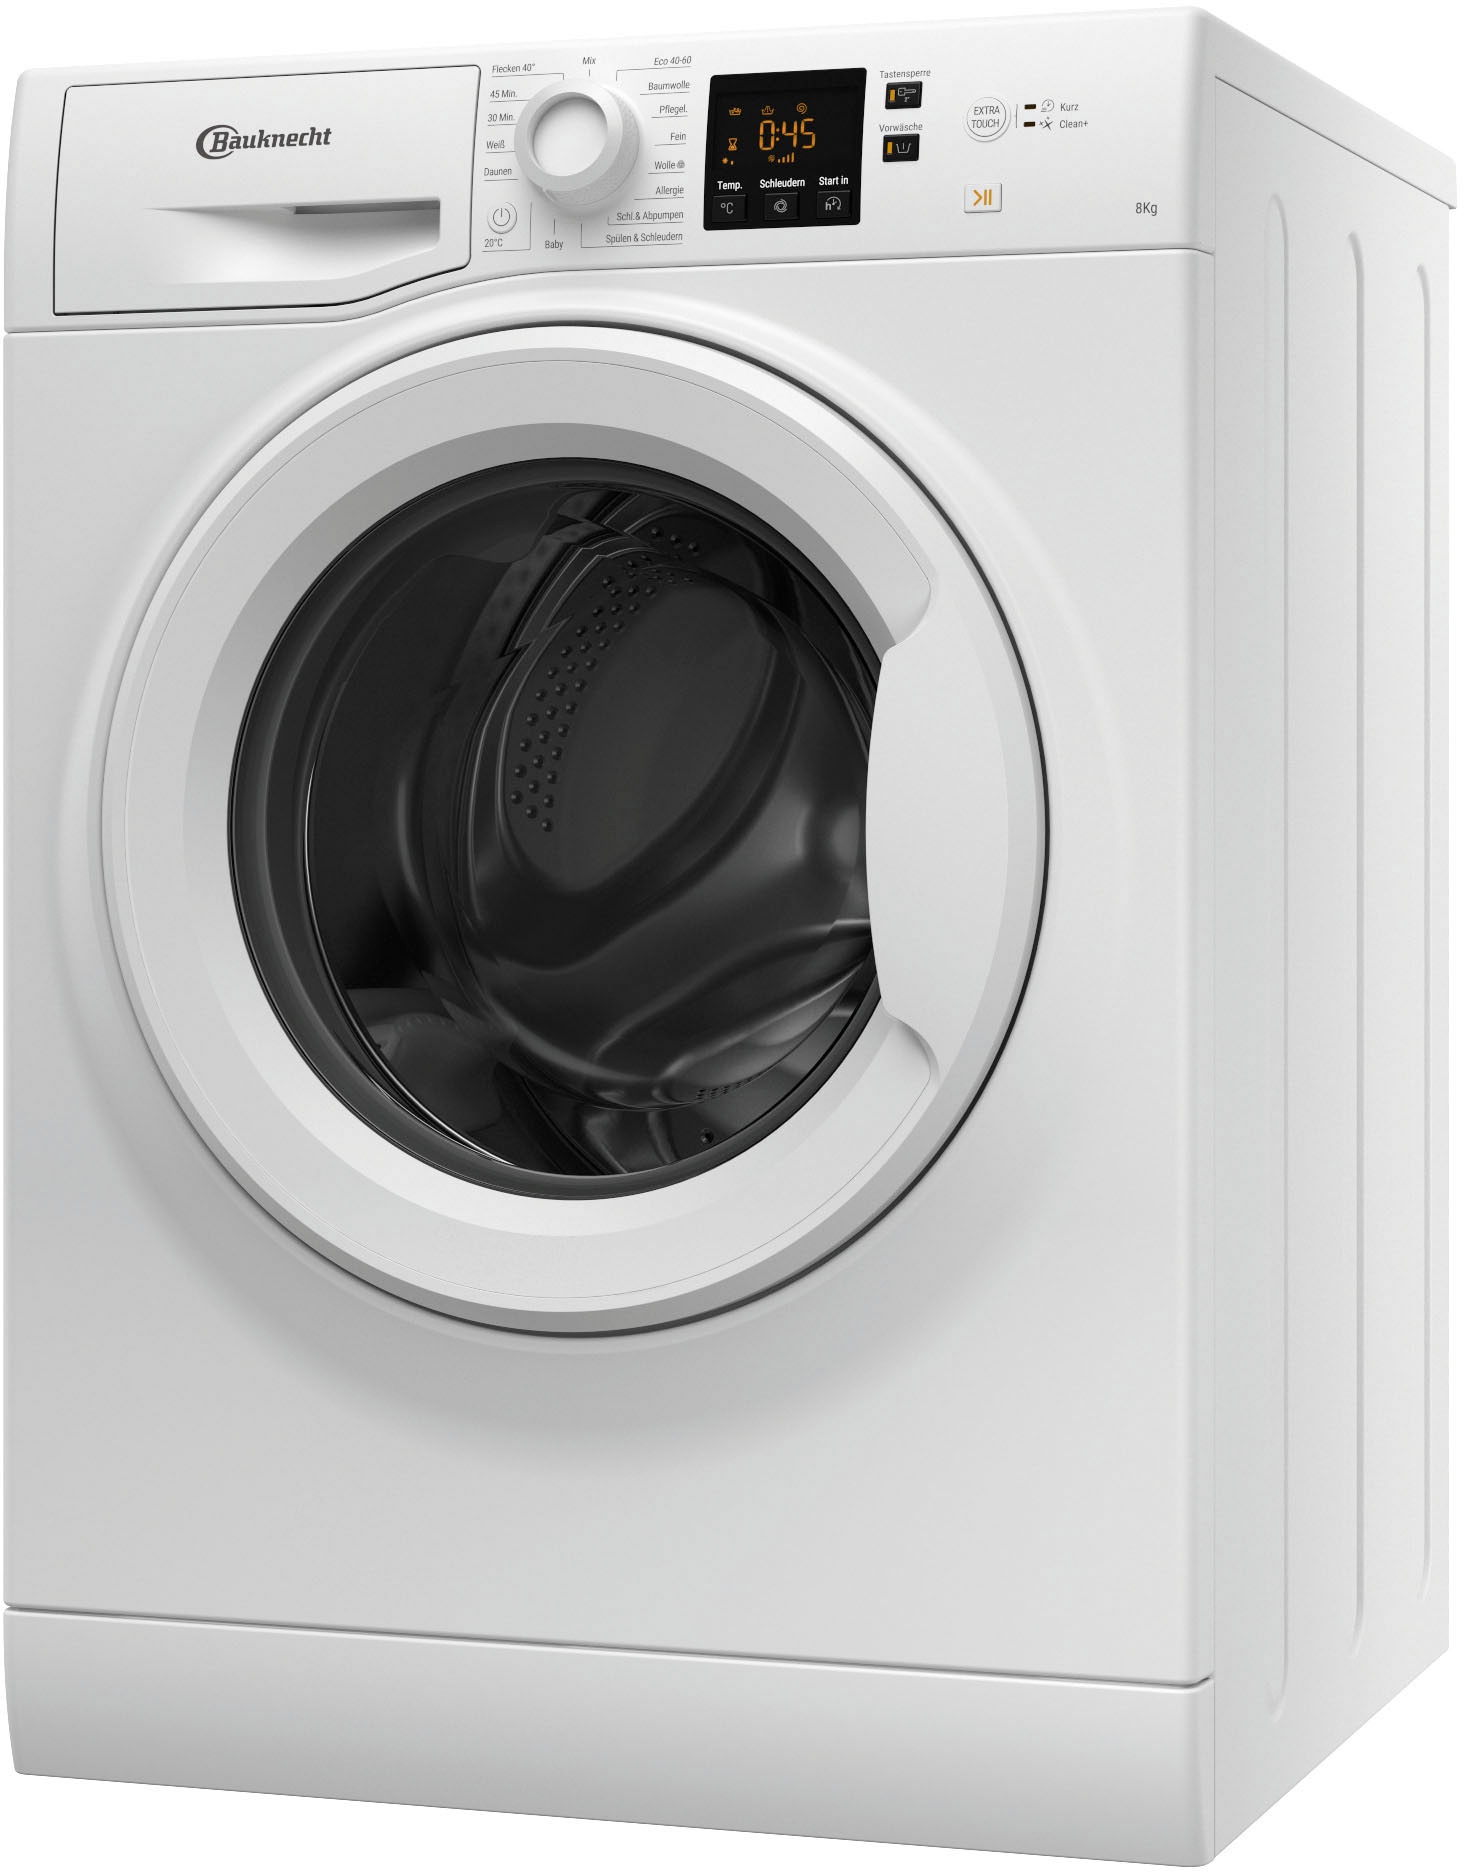 BAUKNECHT Waschmaschine, BPW 814 8 U/min | kg, 1400 A, BAUR bestellen